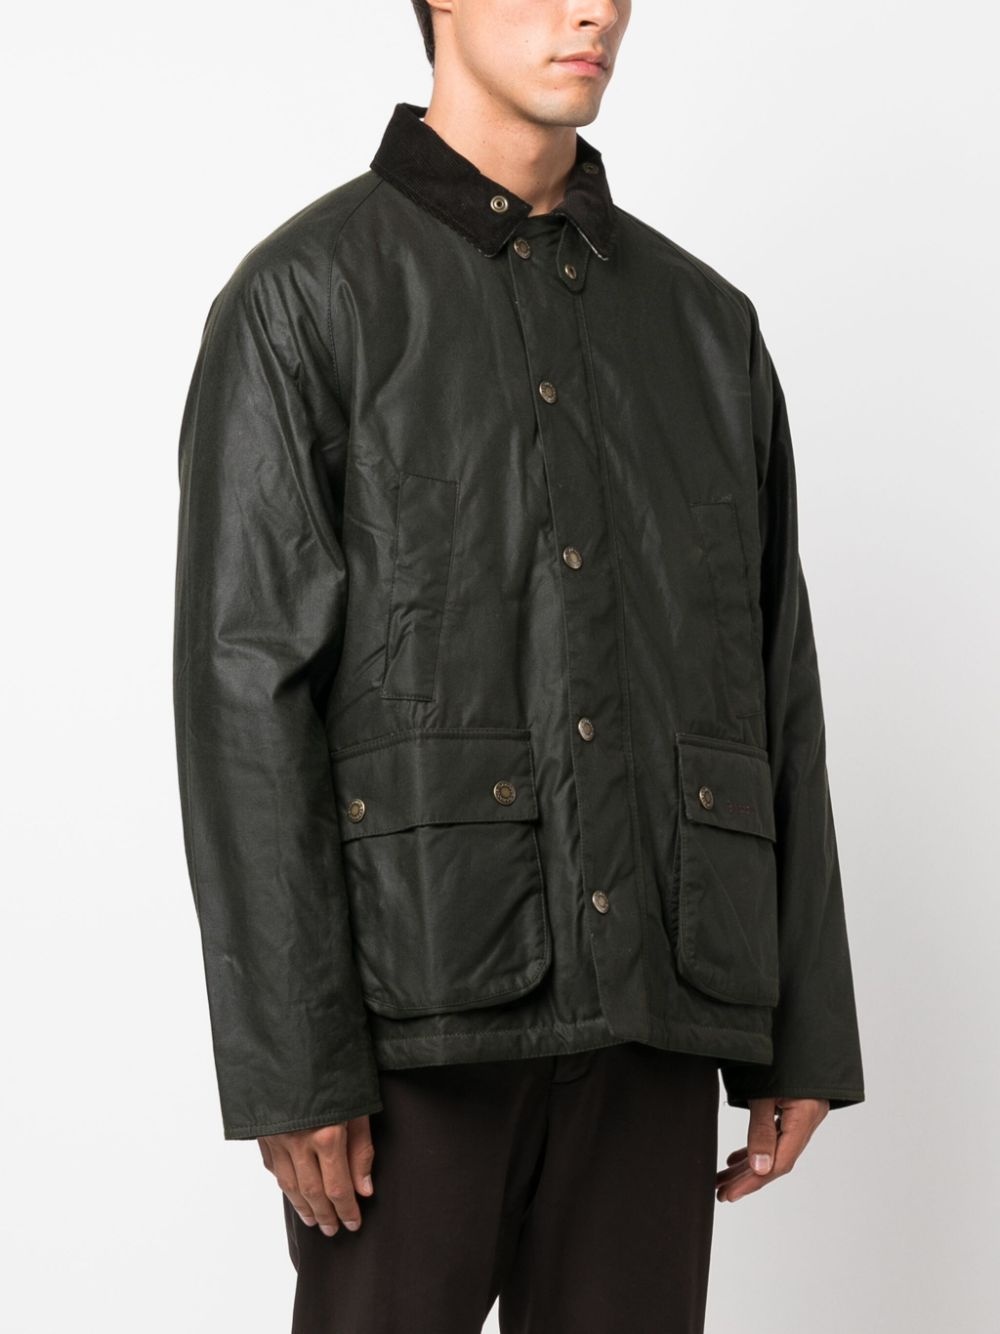 Ambleside coated cotton jacket - 3